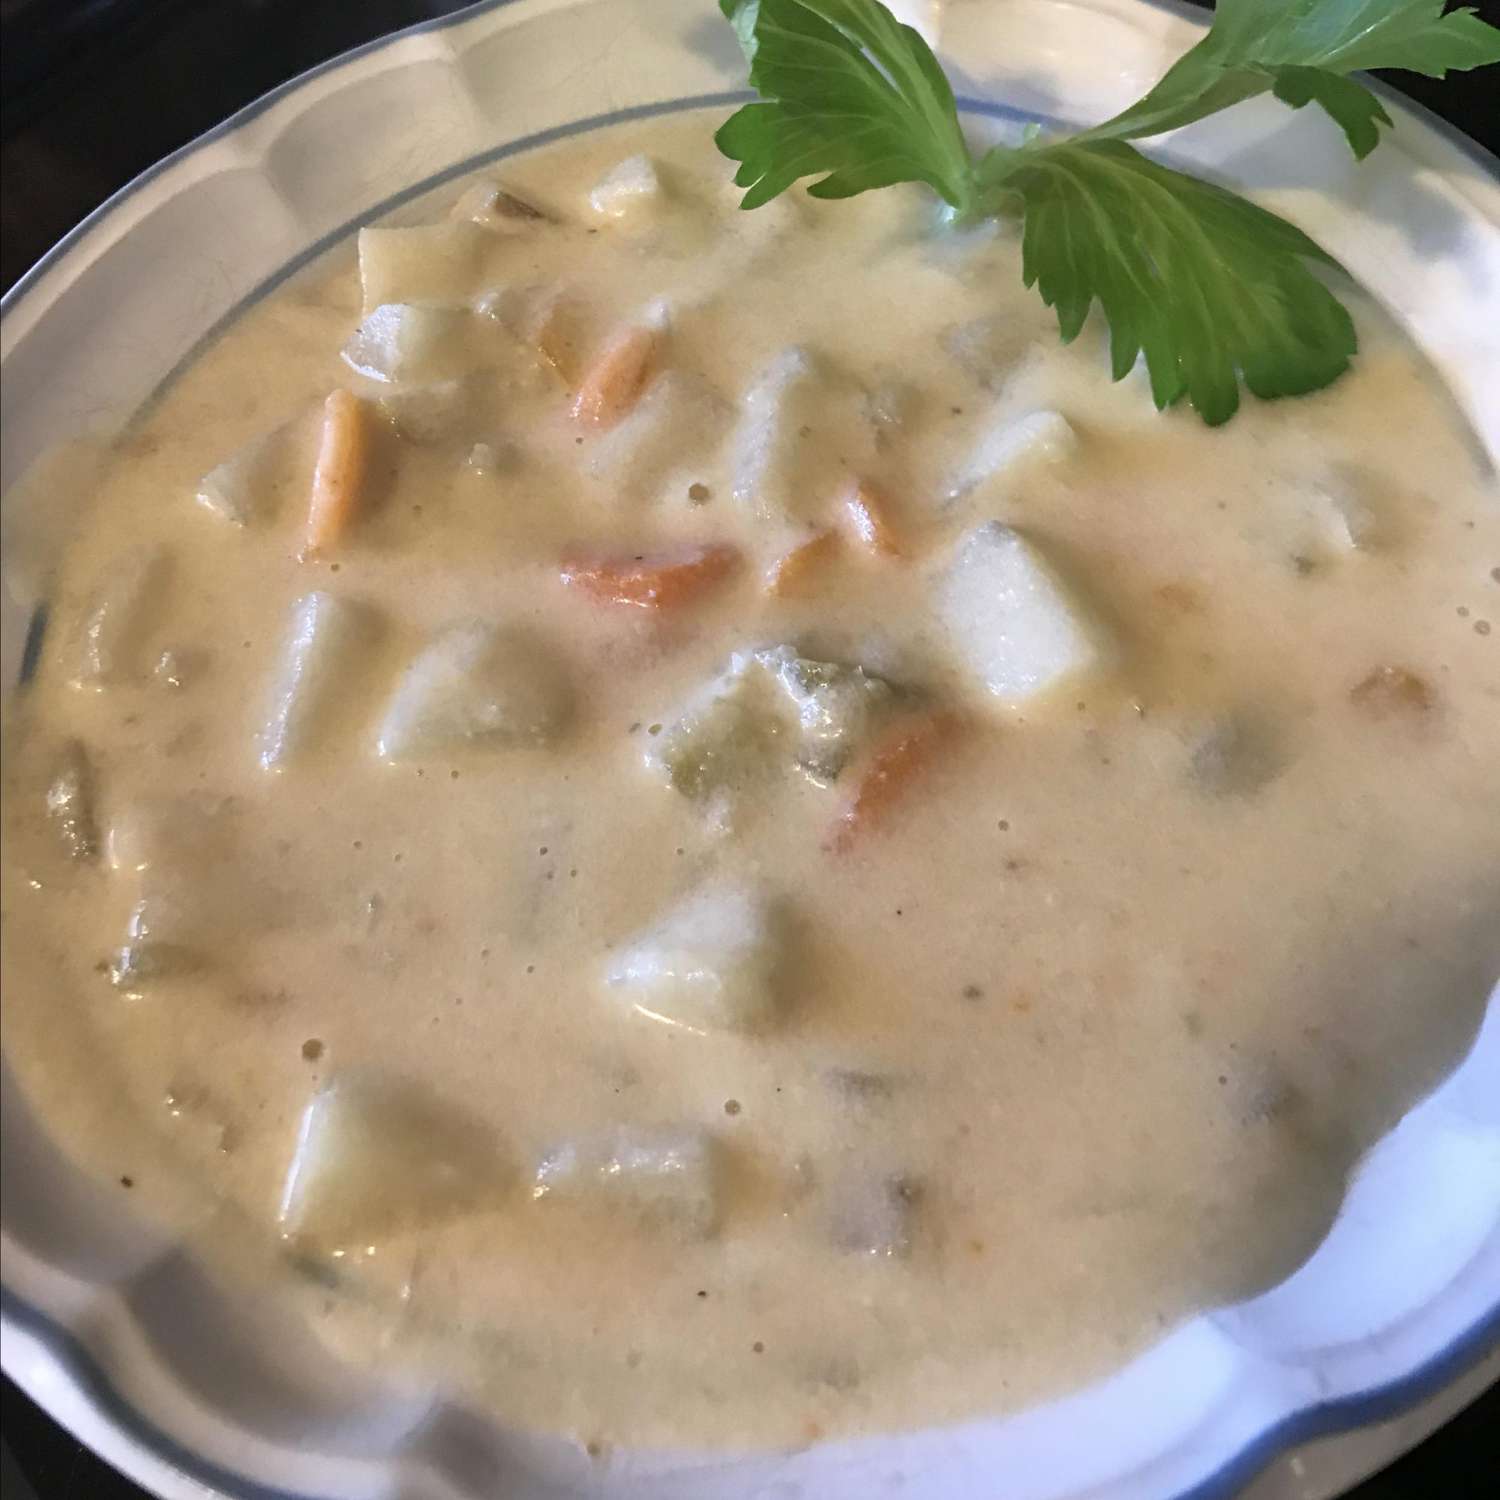 Vegan Potato Soup